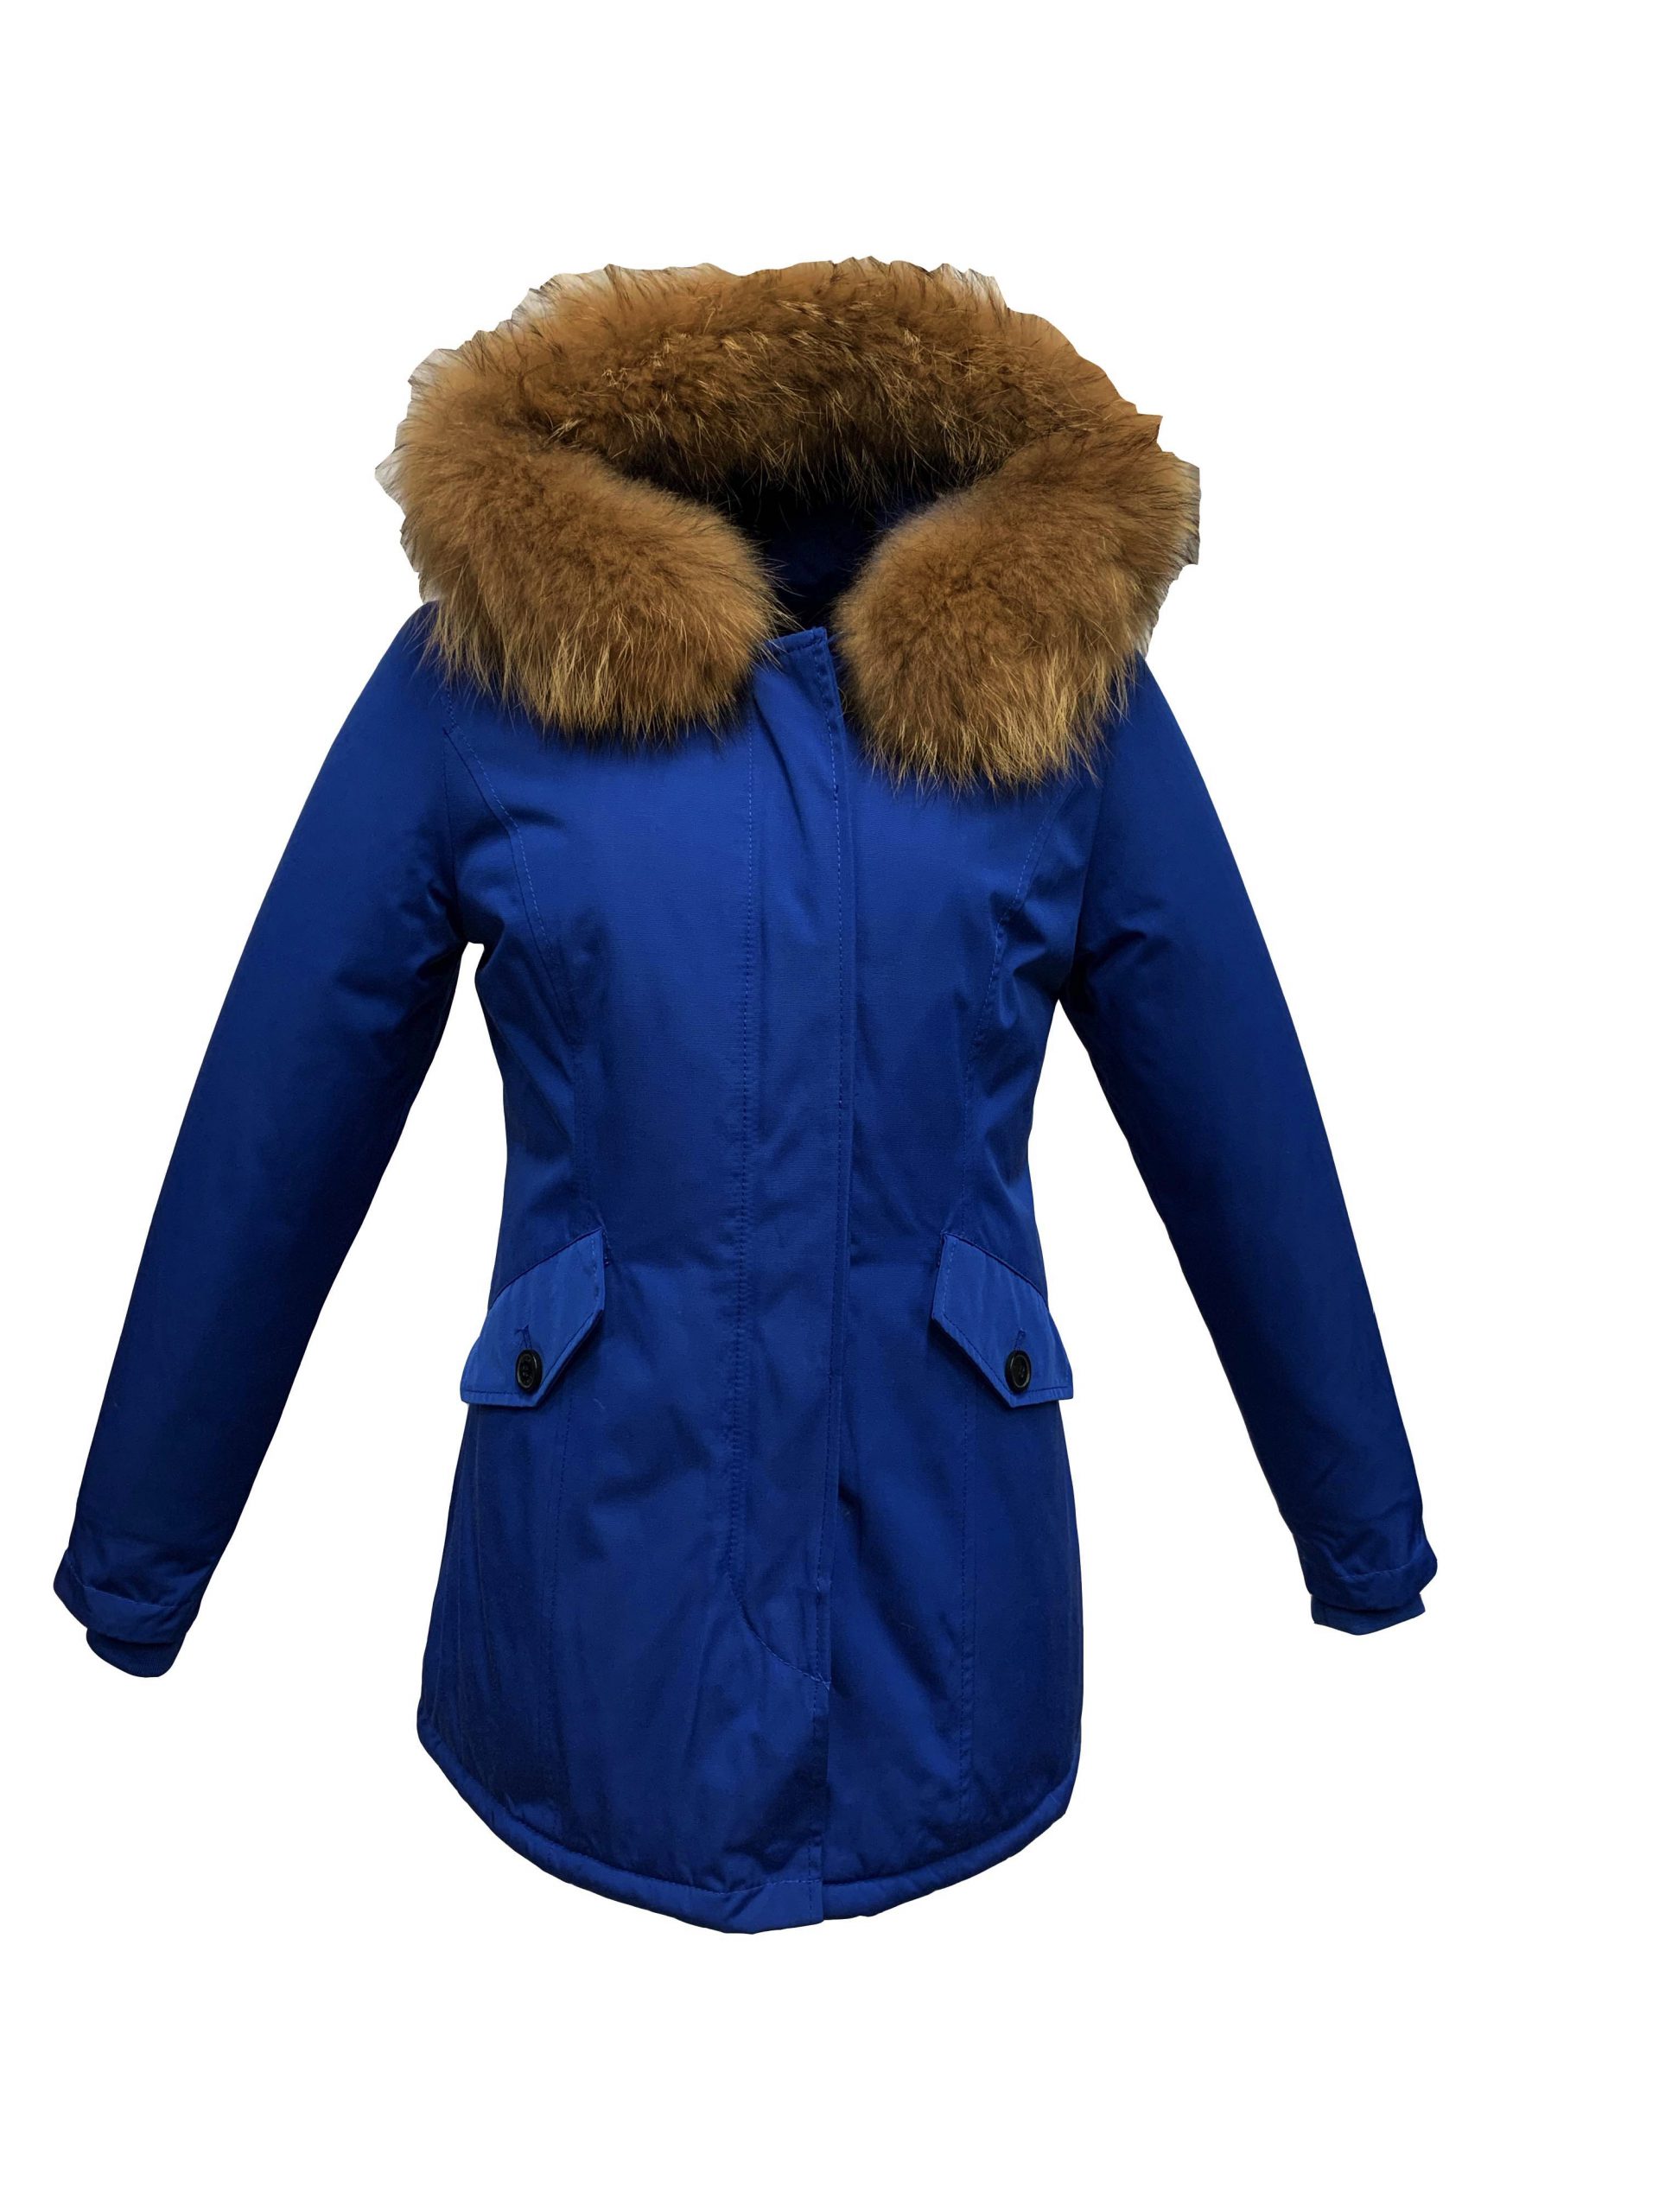 ledematen Uitdrukking musicus Dames winter jas met bontkraag blauw- Canada – BK Leder